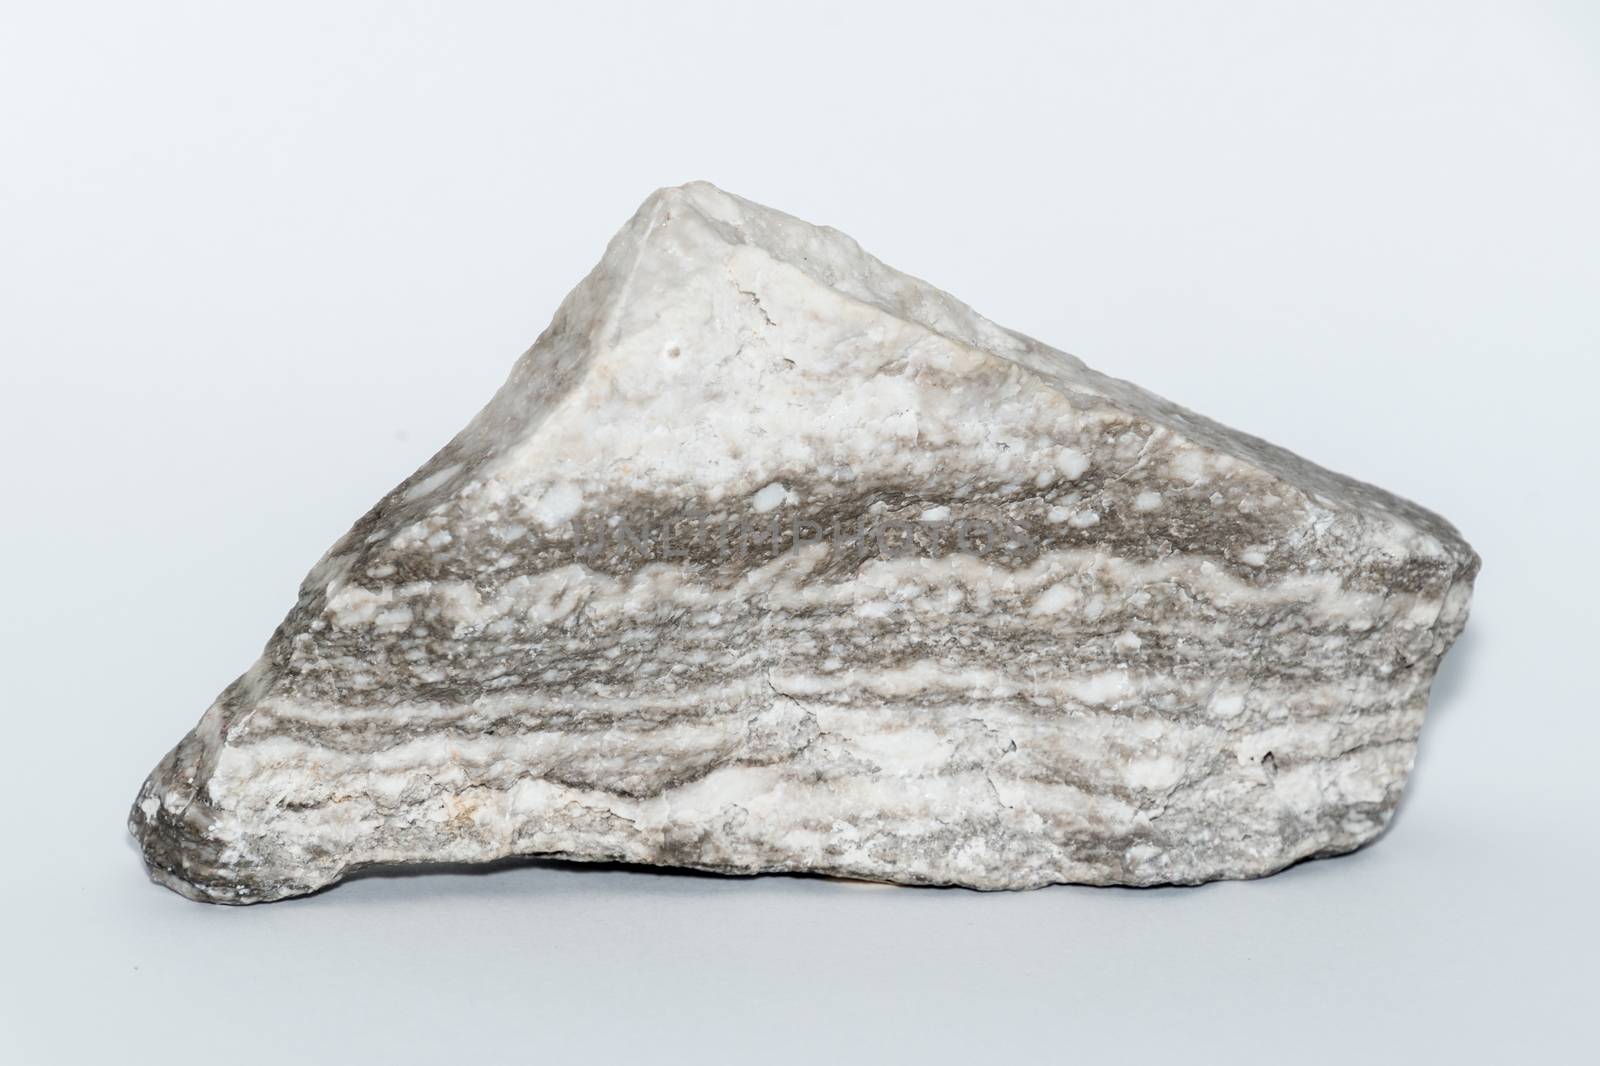 Grey and white gemstone gem jewel mineral precious stone by MXW_Stock